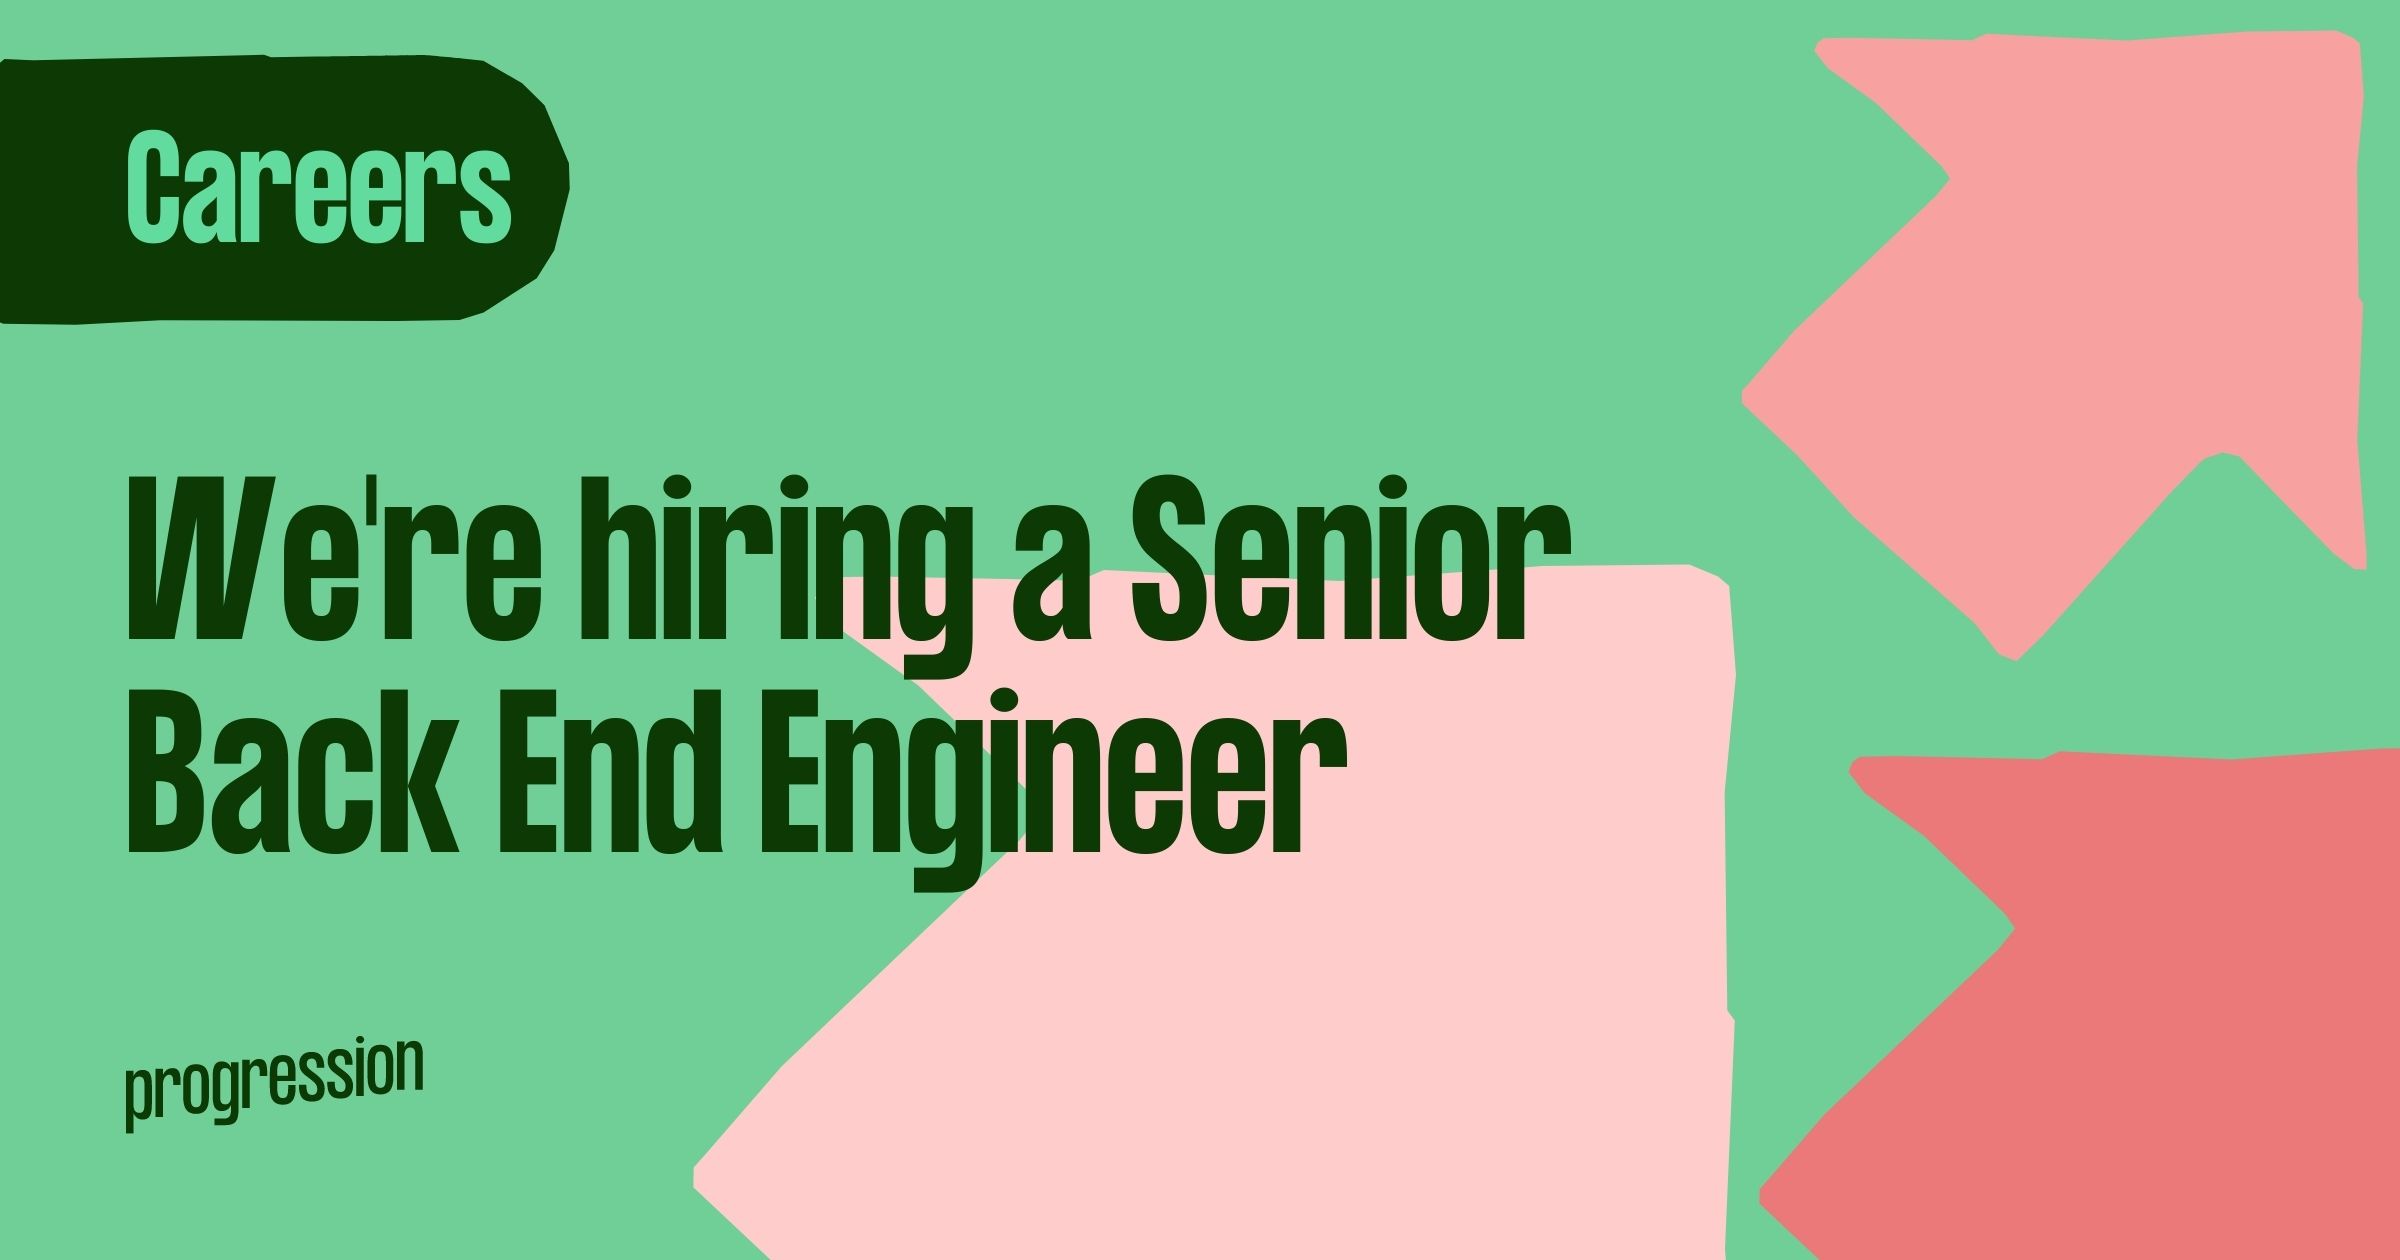 We're hiring: Senior Back End Engineer